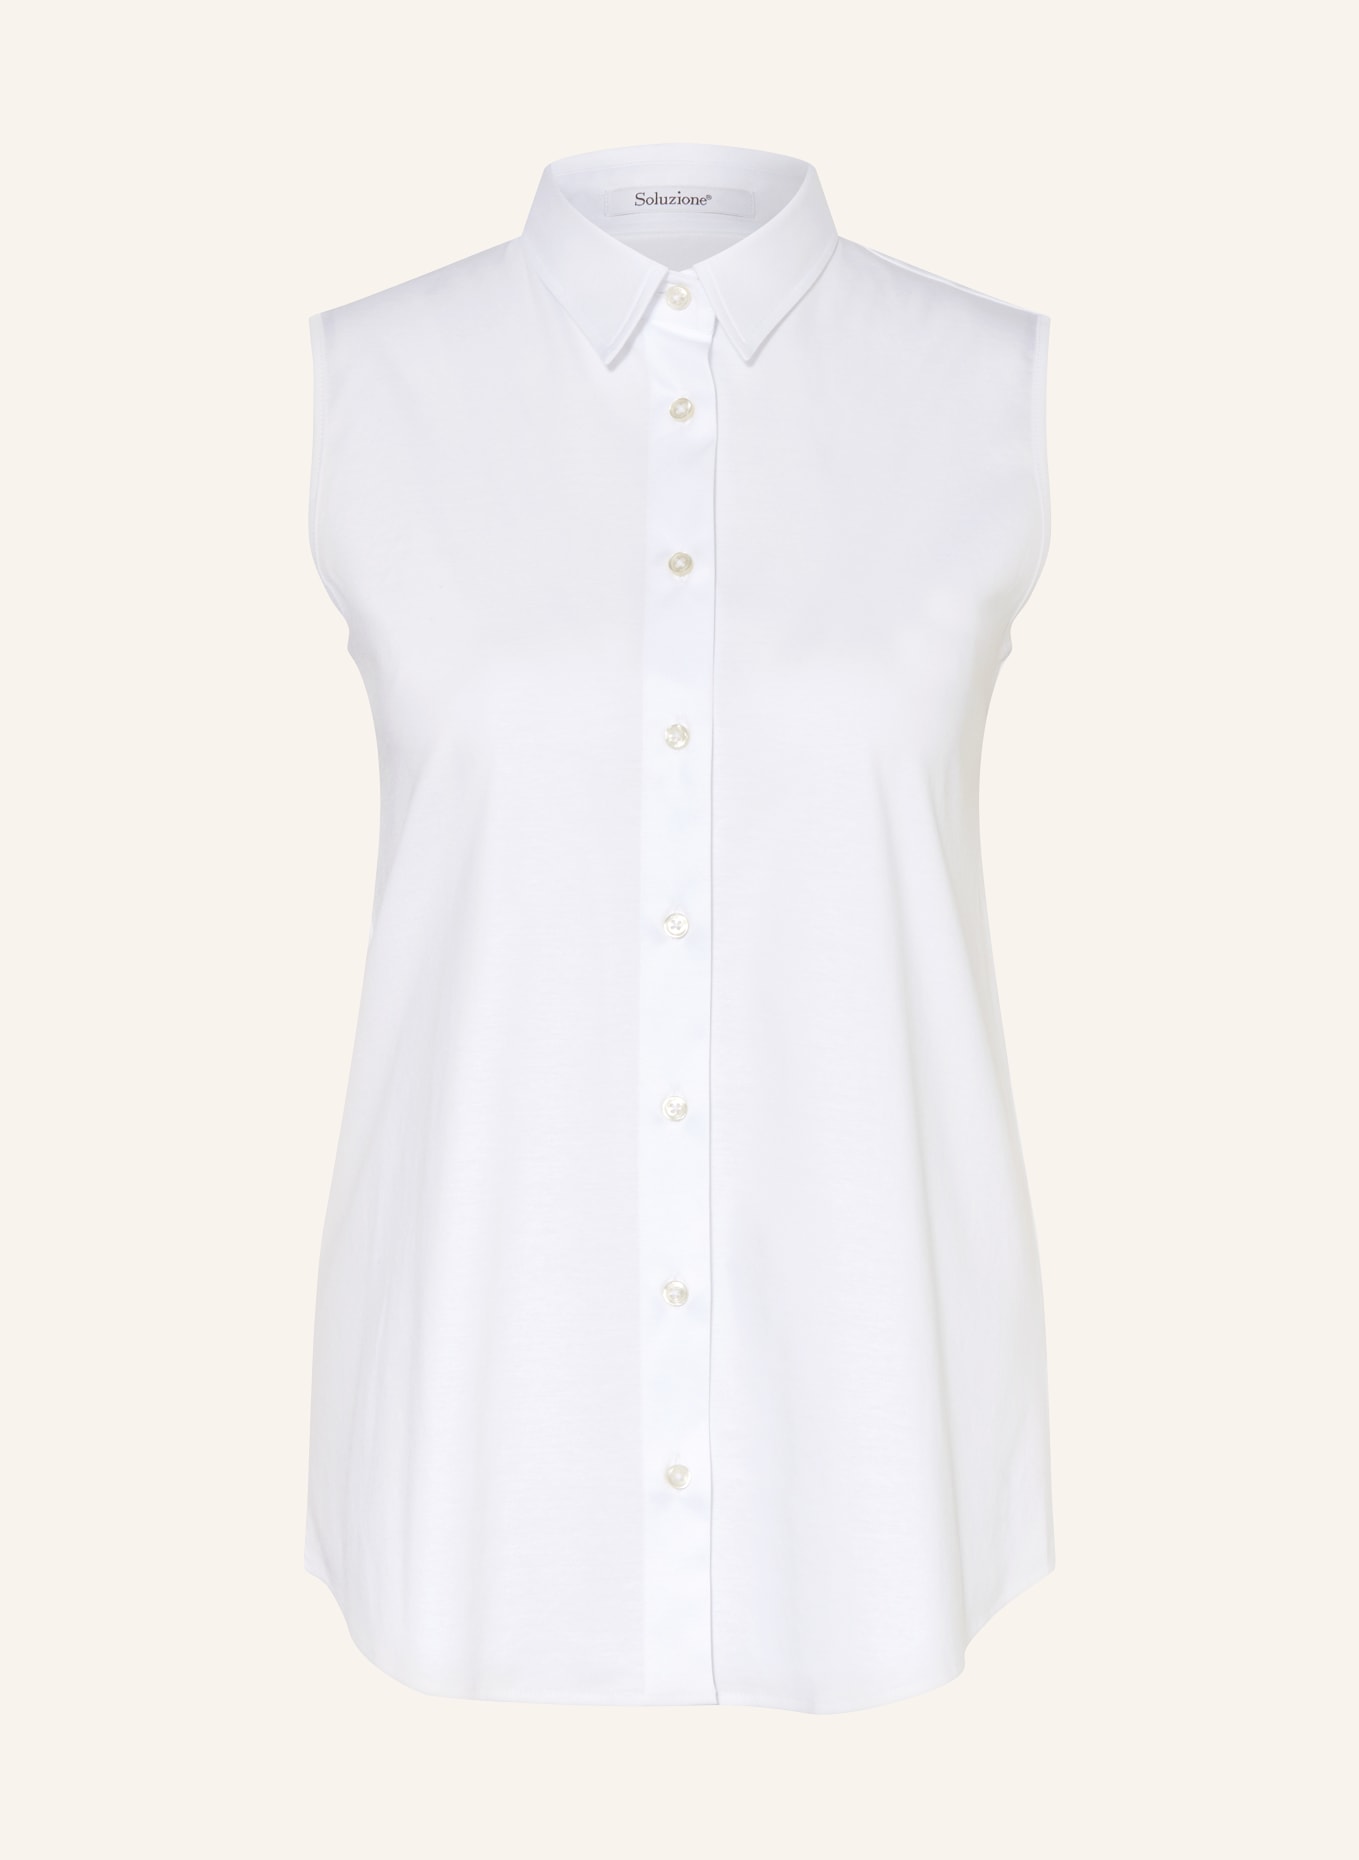 Soluzione Blouse top, Color: WHITE (Image 1)